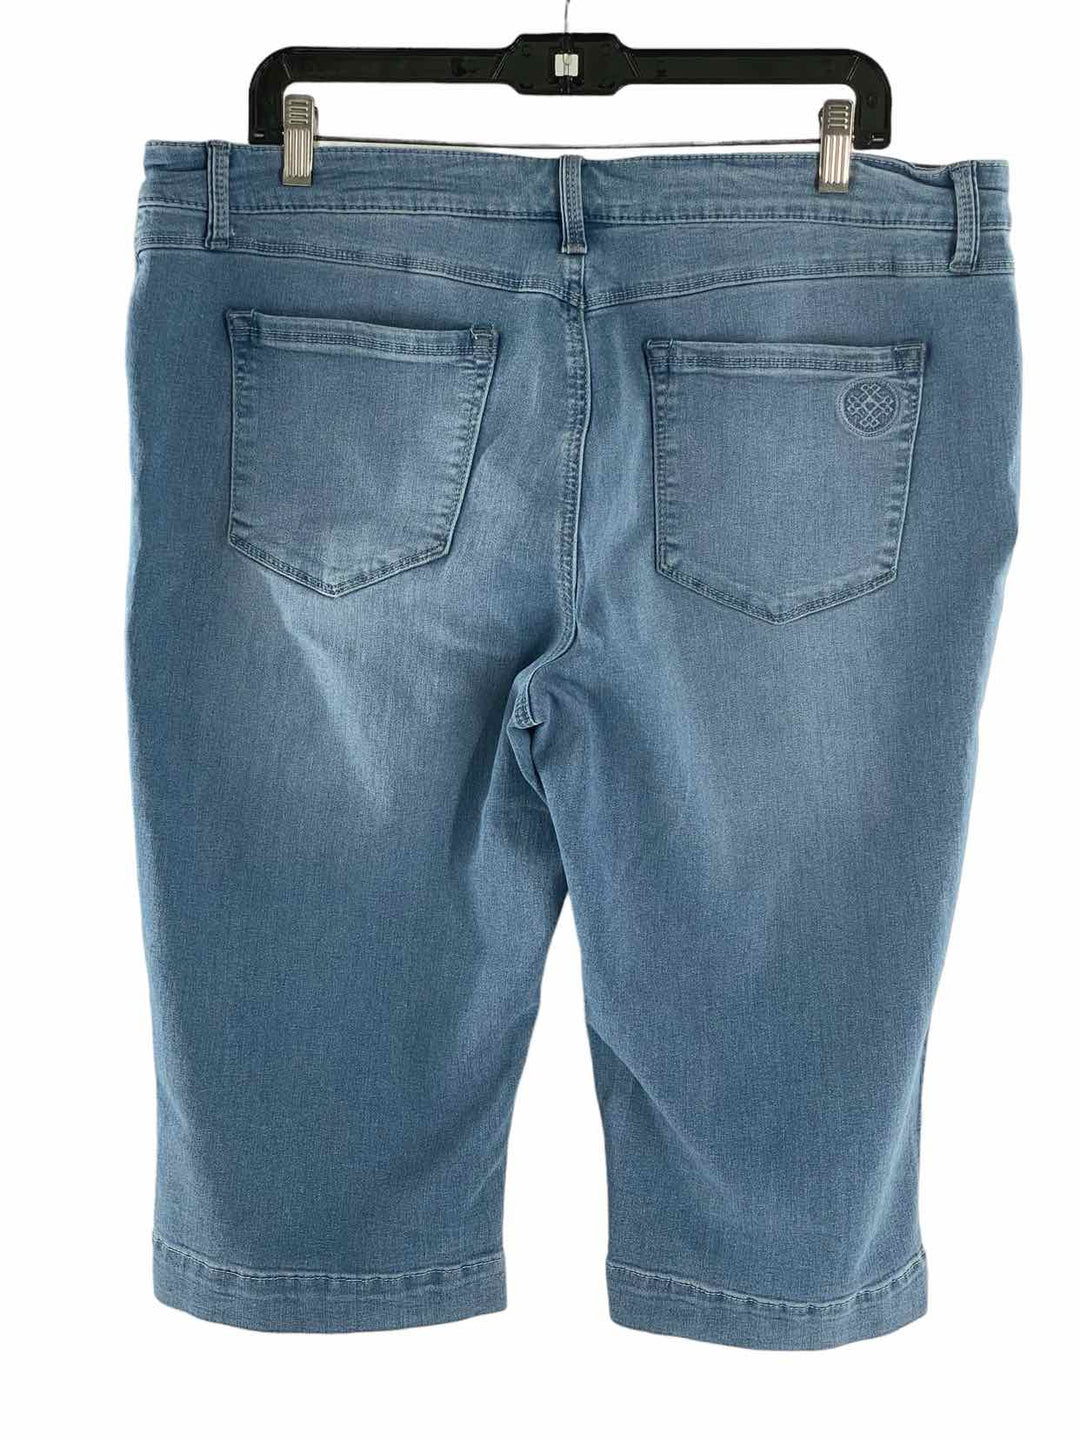 Laurie Felt Size XL Blue Jeans